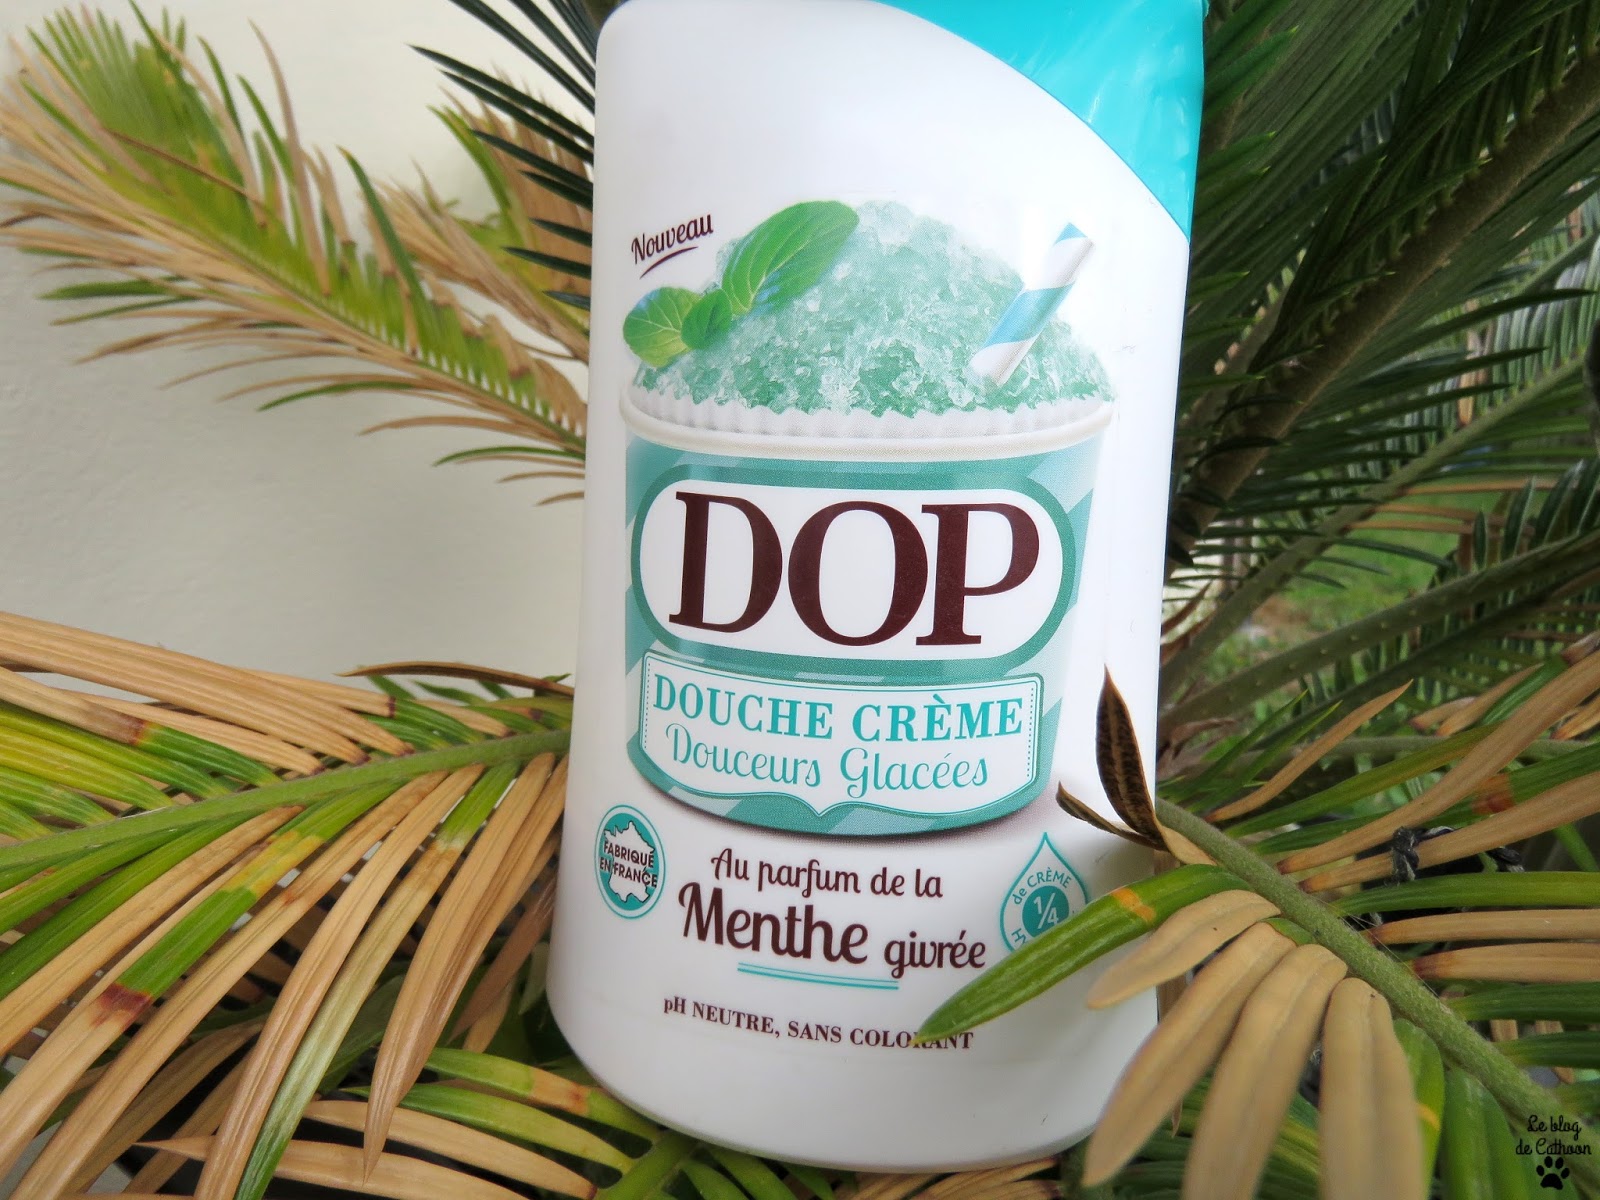 Douche Crème Douceurs Glacées - Menthe Givrée - Dop